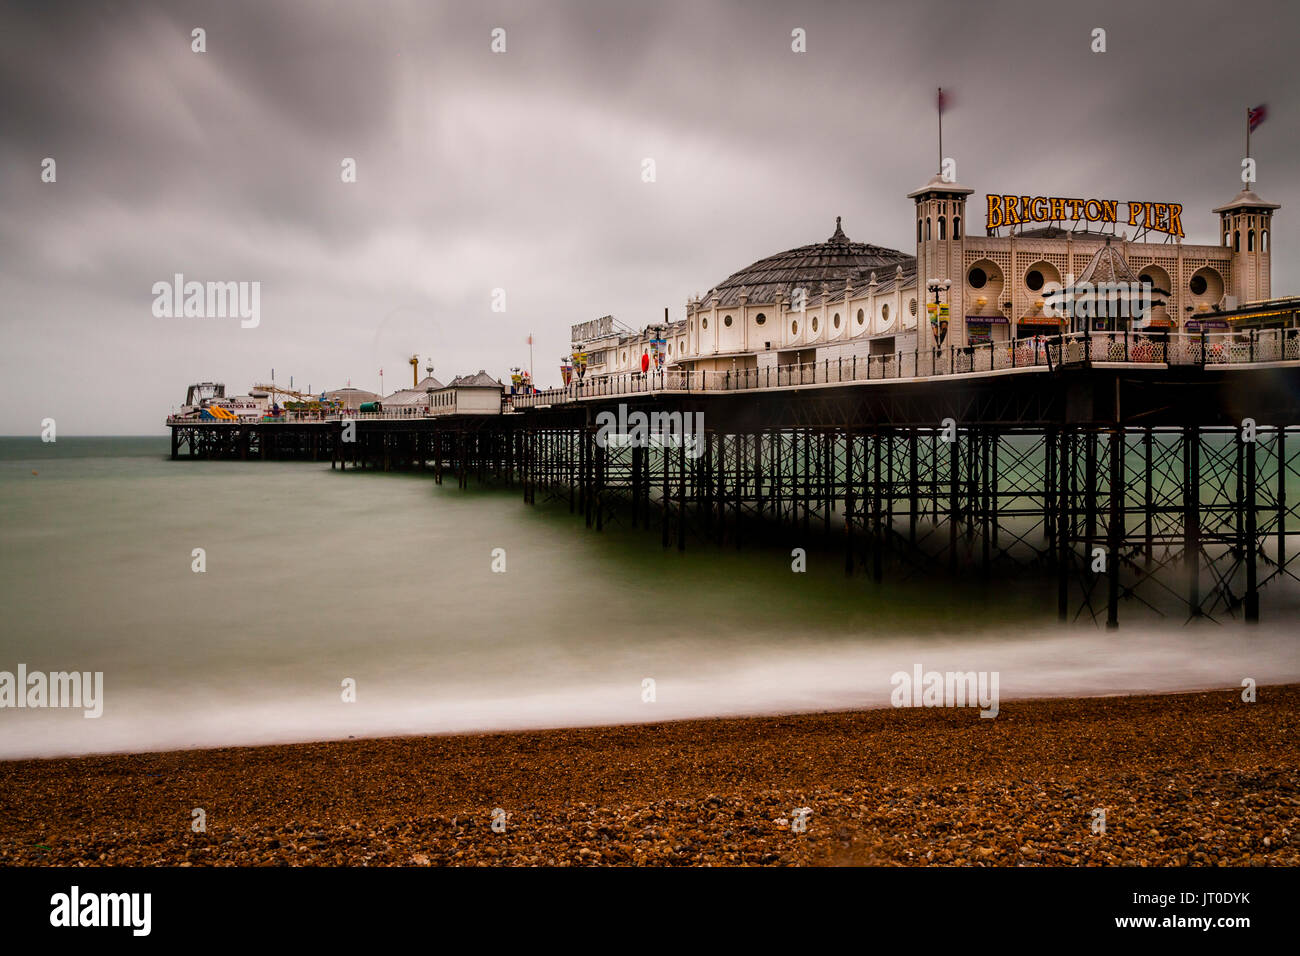 Le Palace Pier de Brighton sur un jour de pluie, Brighton, Sussex, UK Banque D'Images